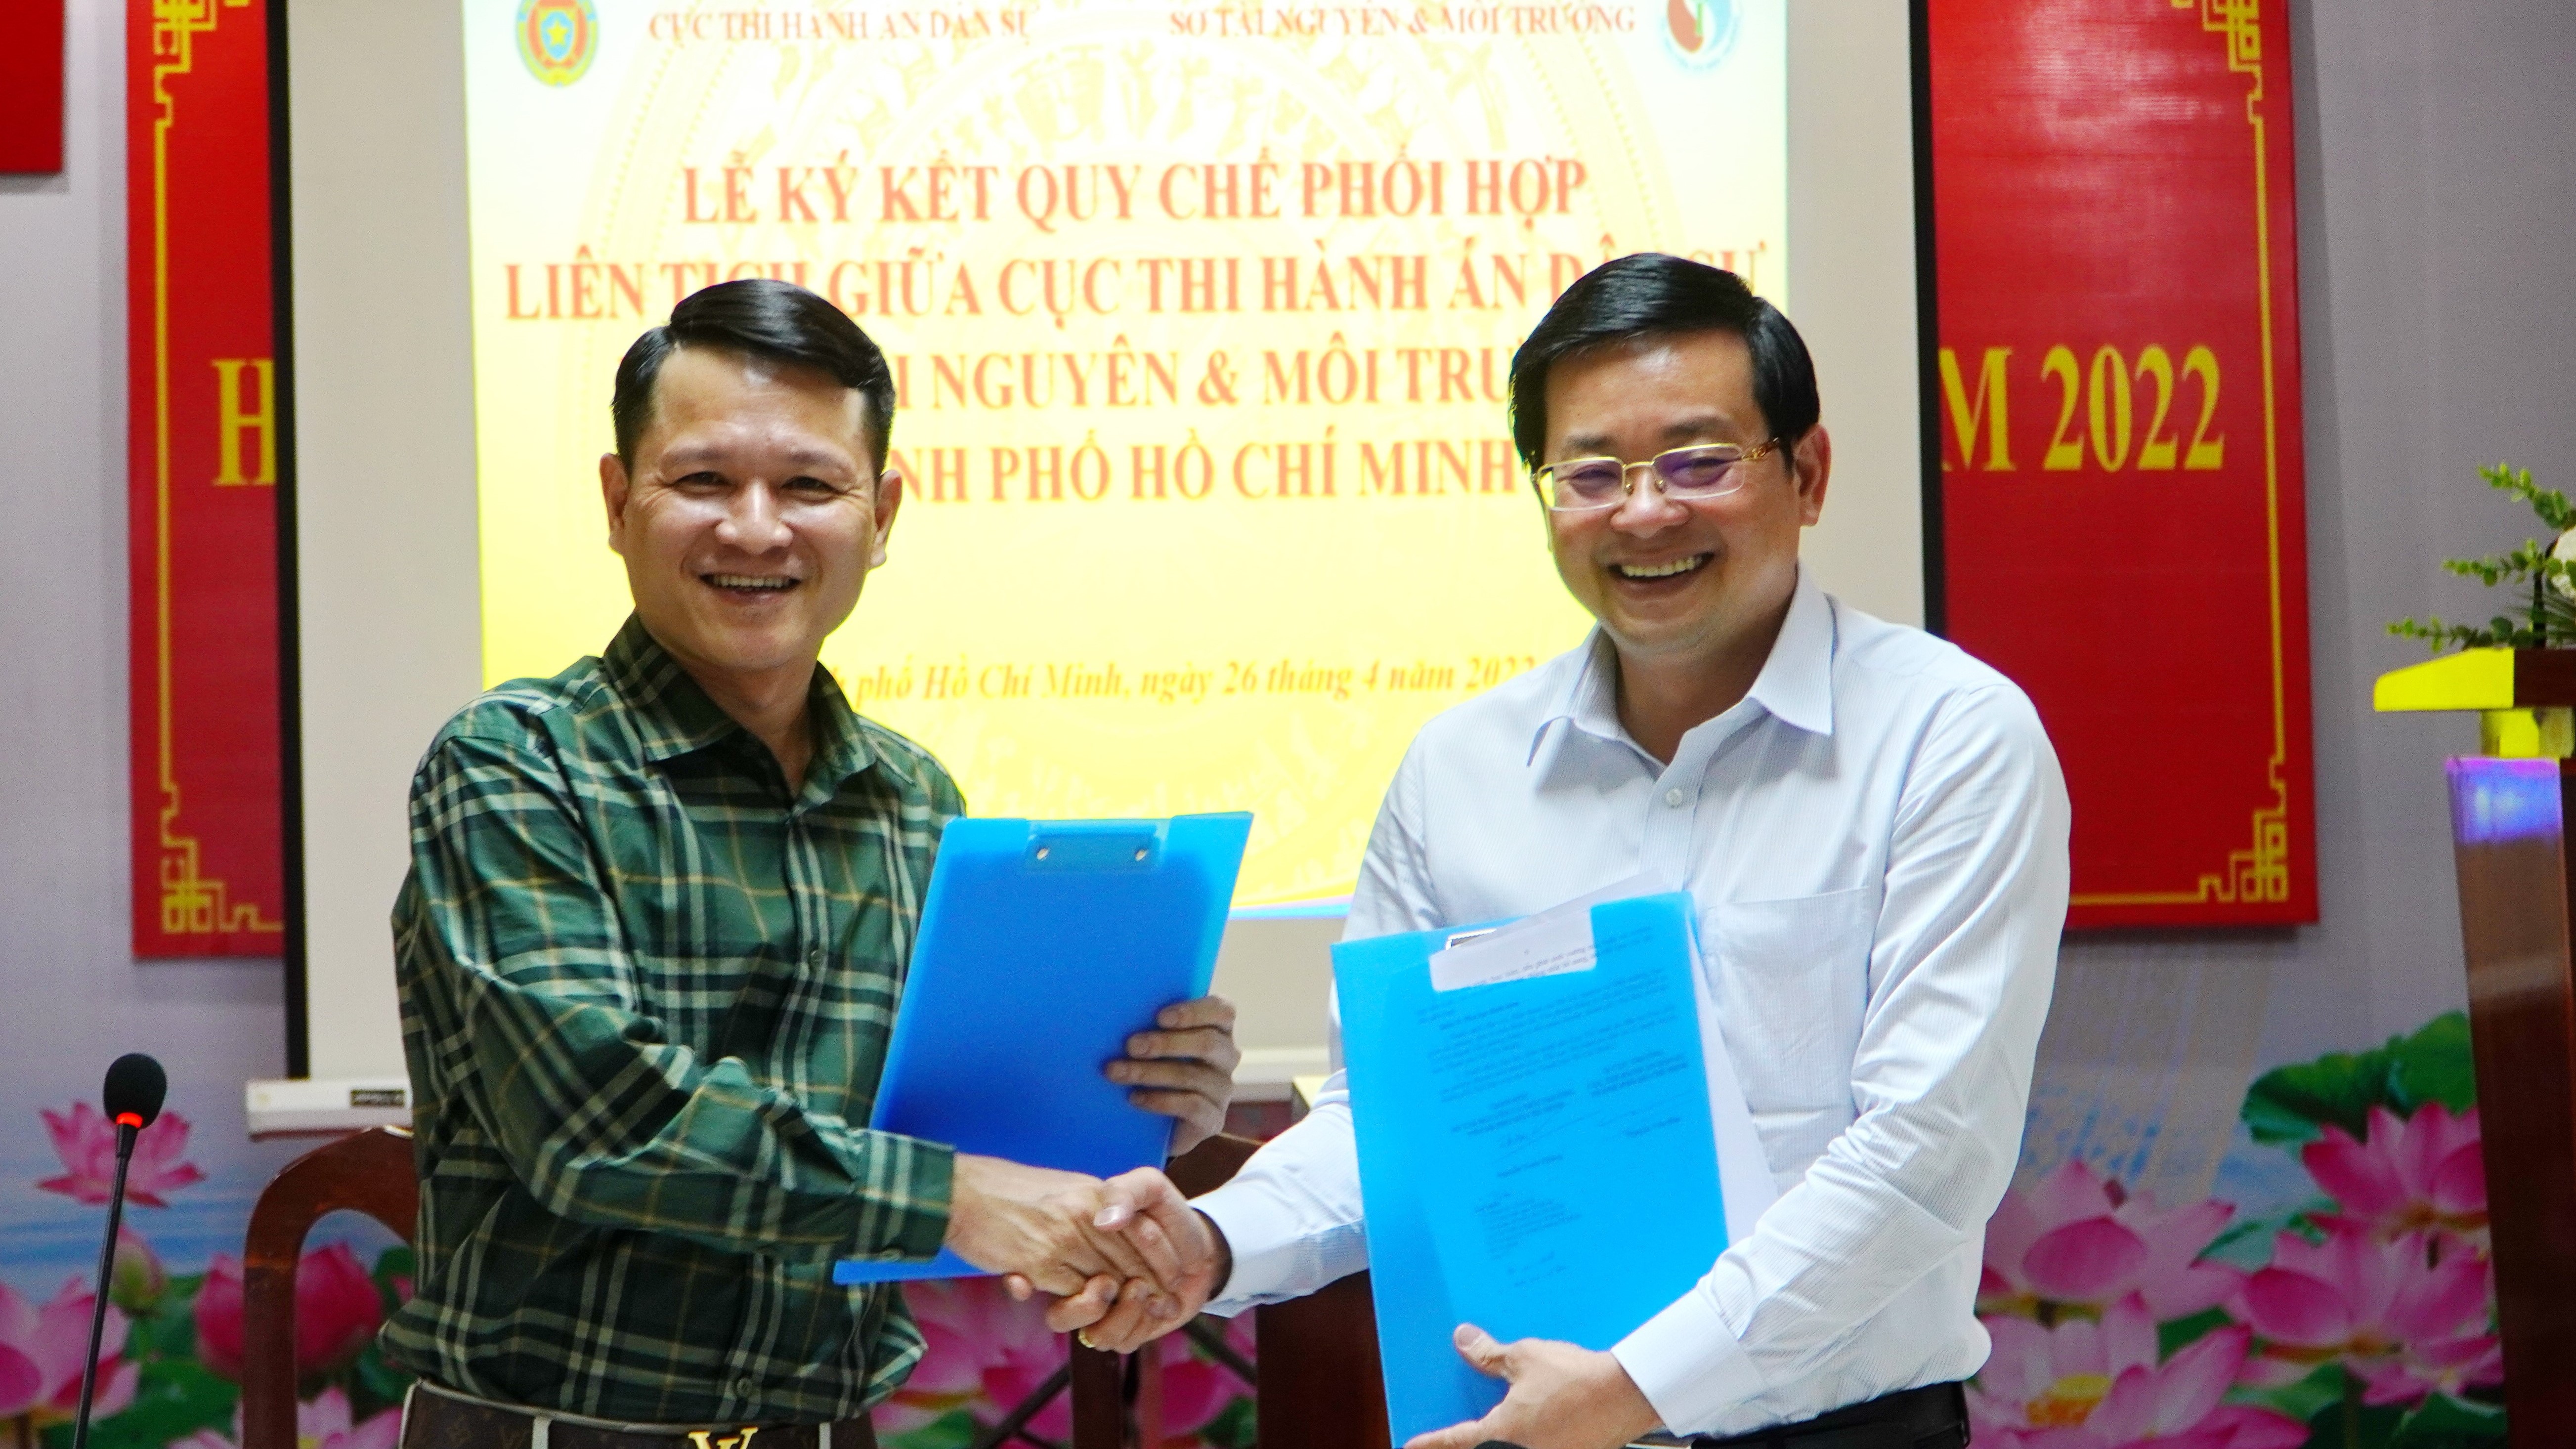 Cục Thi hành án dân sự, Sở Tài nguyên &Môi trường Thành phố Hồ Chí Minh ký kết Quy chế phối hợp